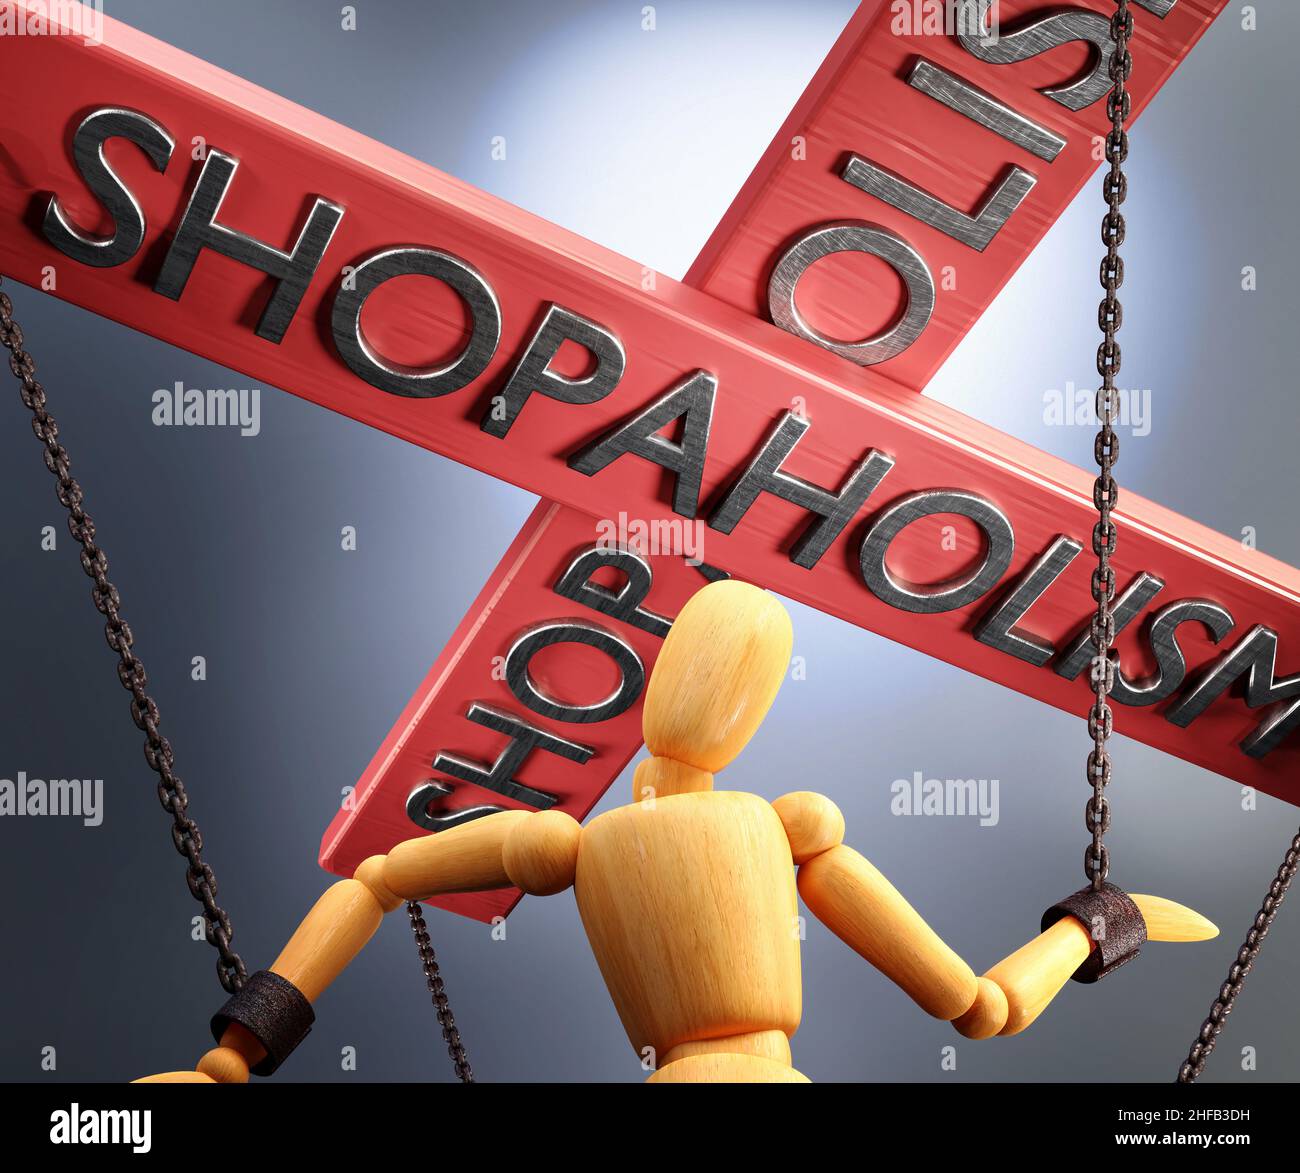 Controllo, potere, influenza e manipolazione dello Shopaholism simbolizzati dalla barra di controllo con la parola Shopaholism che tira le corde (catene) di un pupazzo di legno Foto Stock